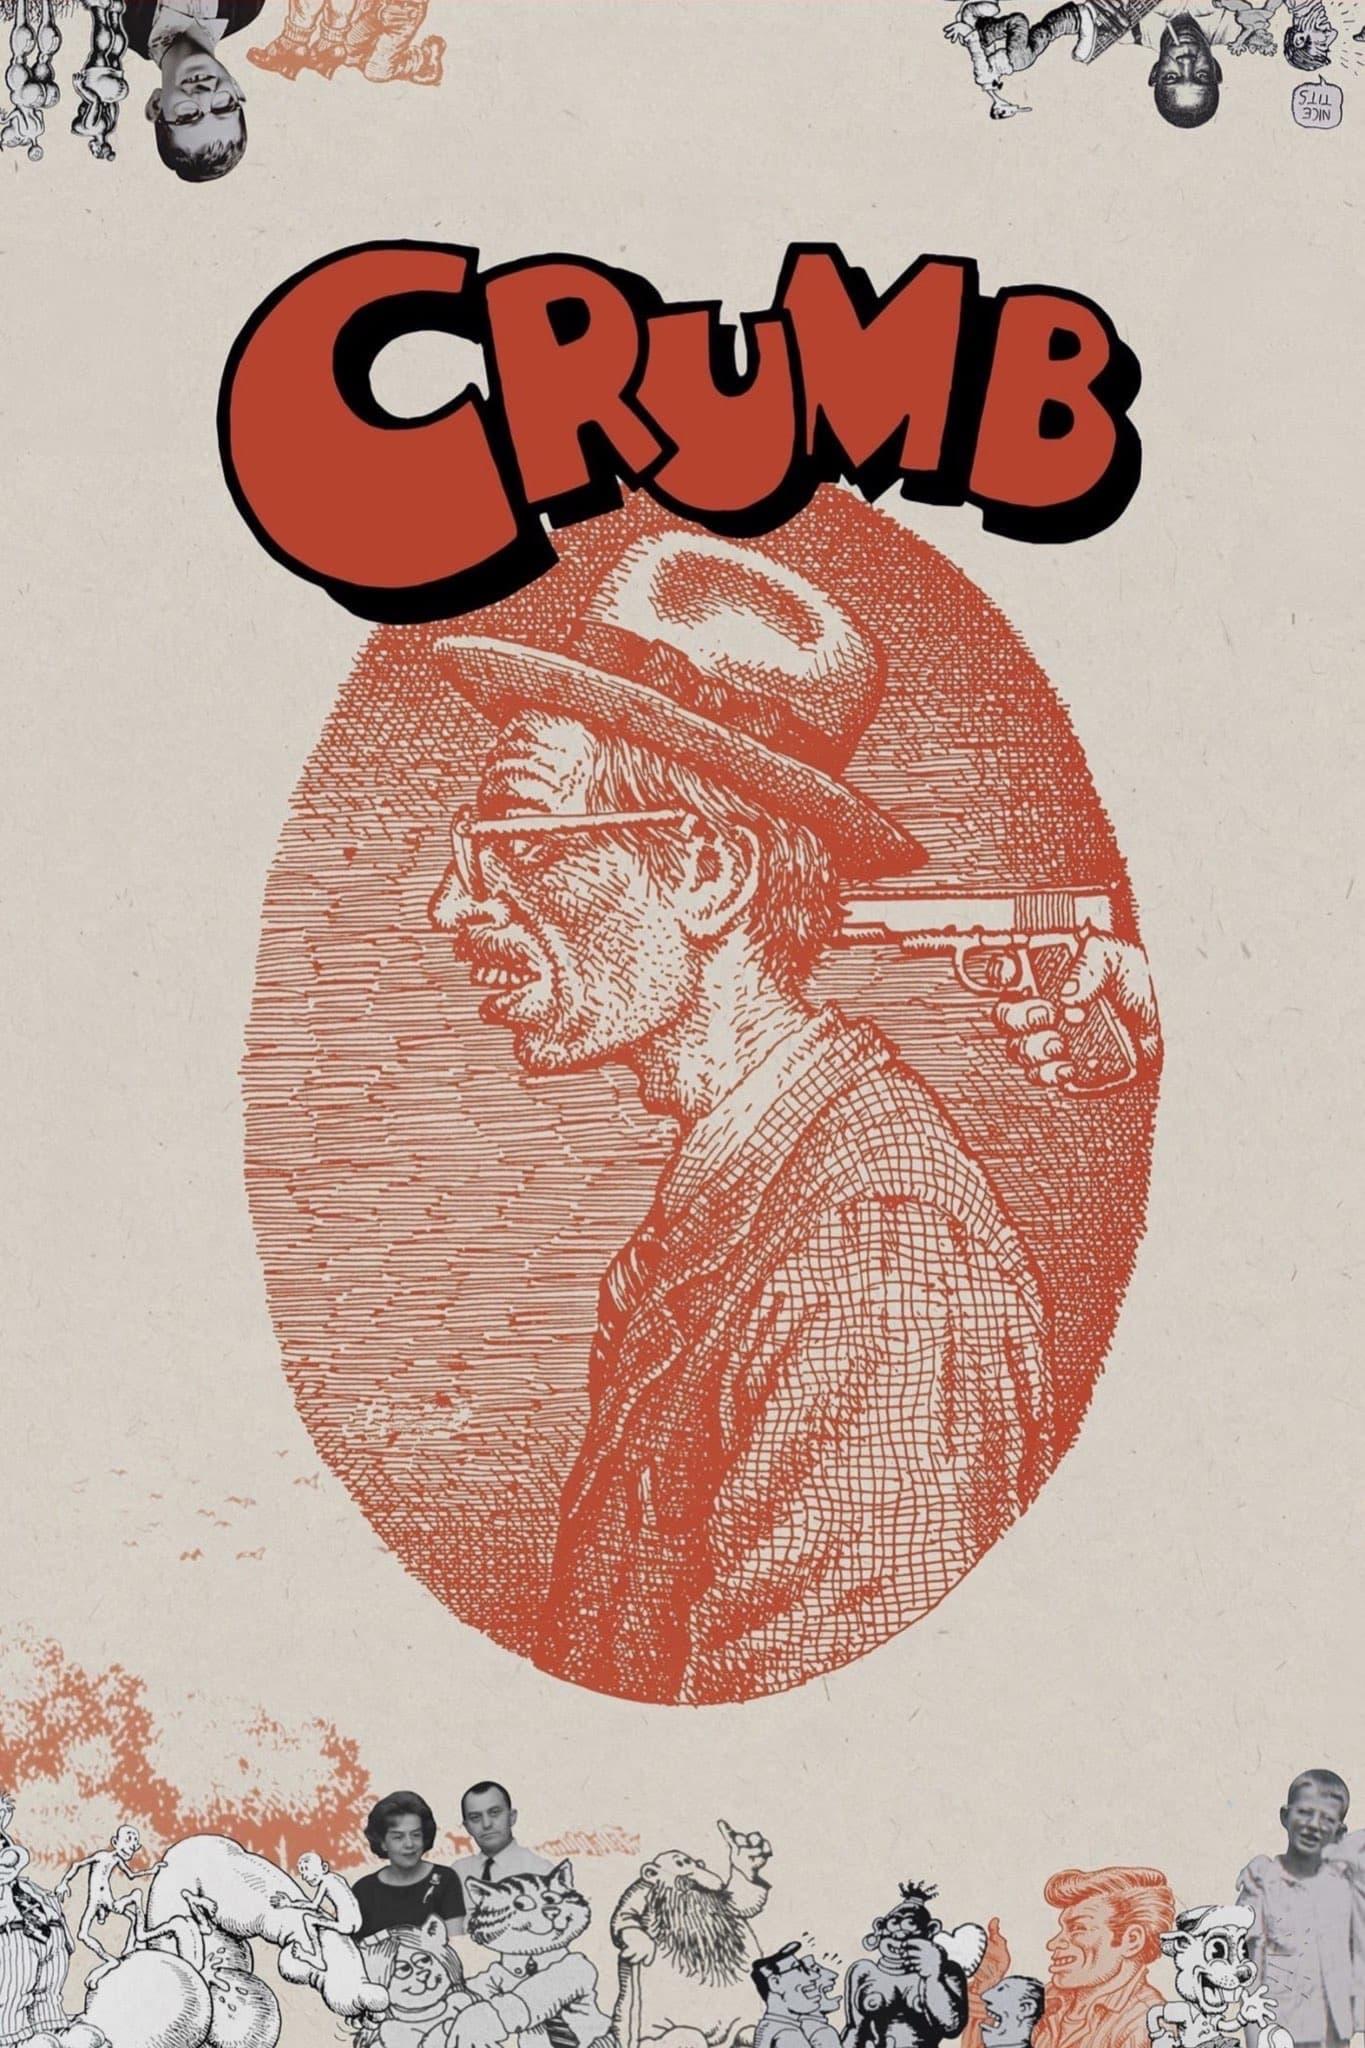 Crumb poster